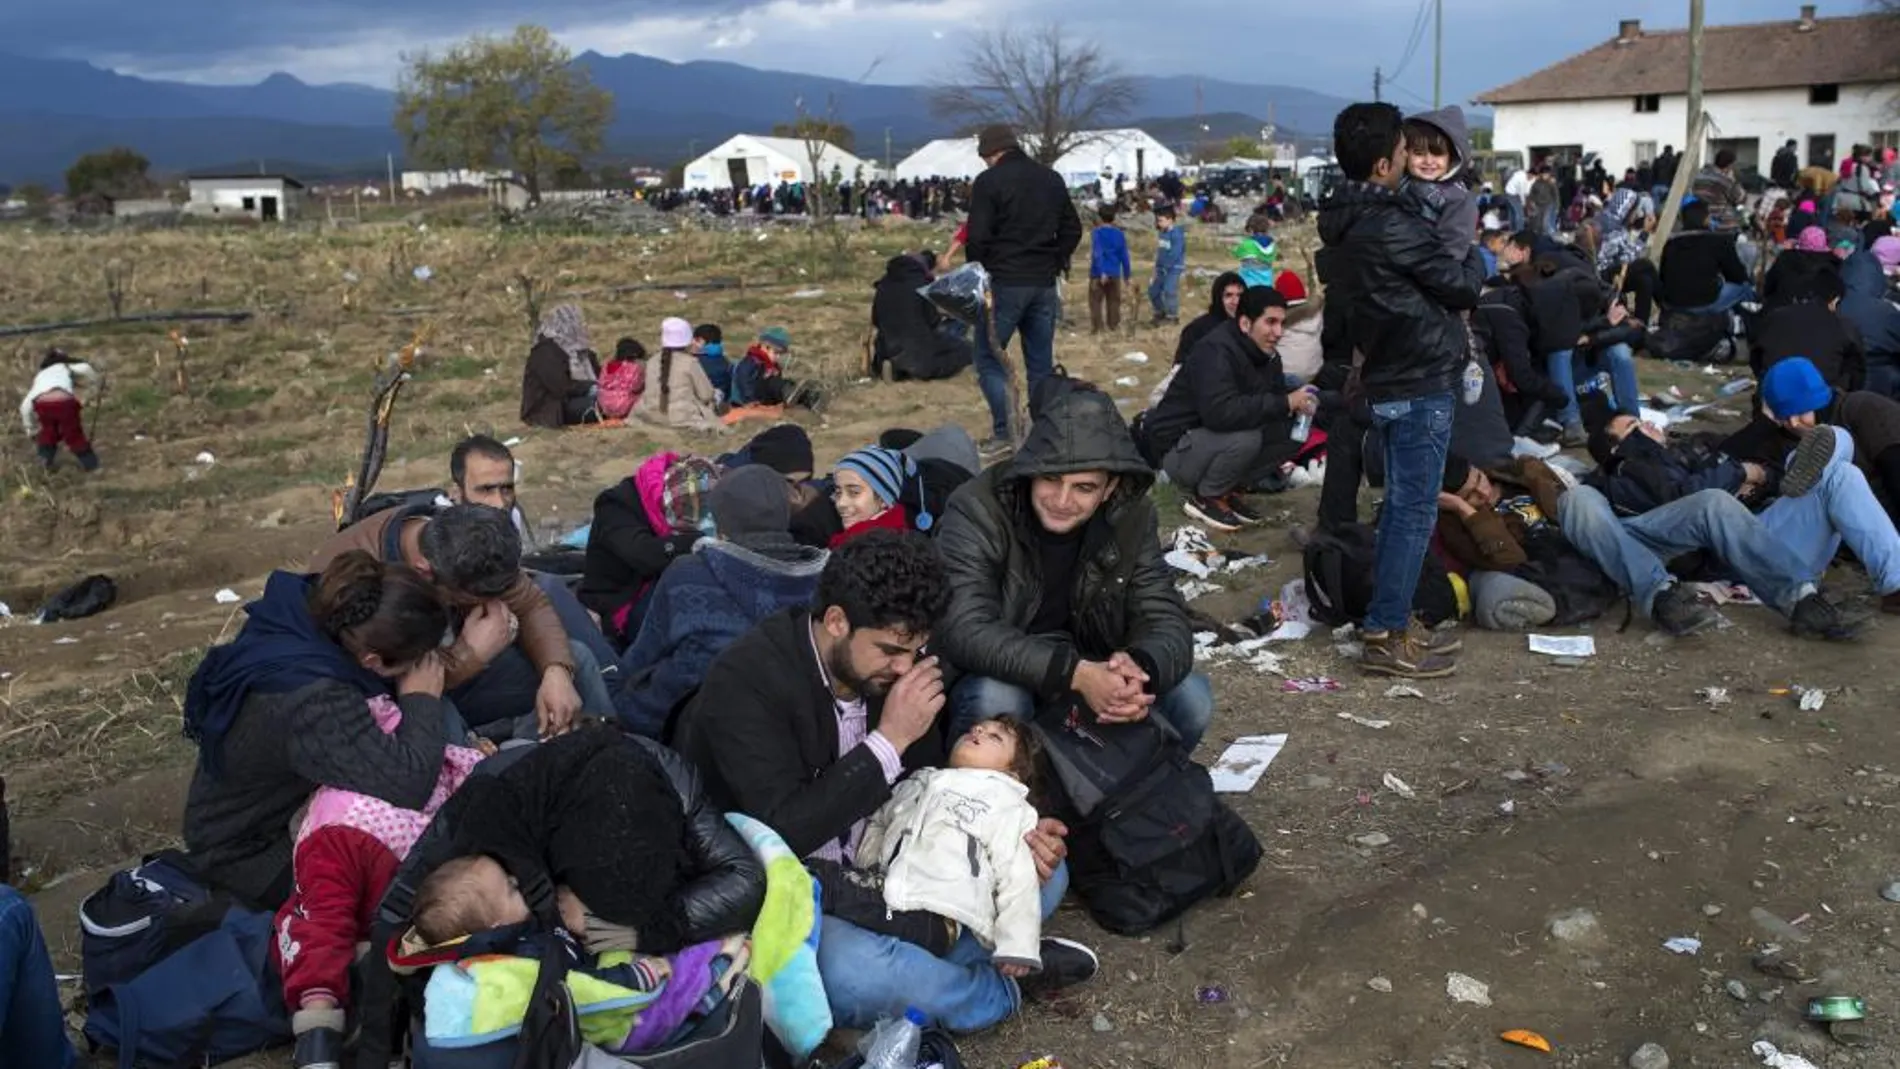 Cientos re refugiados esperan para acceder al campamento de registro y tránsito tras cruzar la frontera entre Grecia y Macedonia